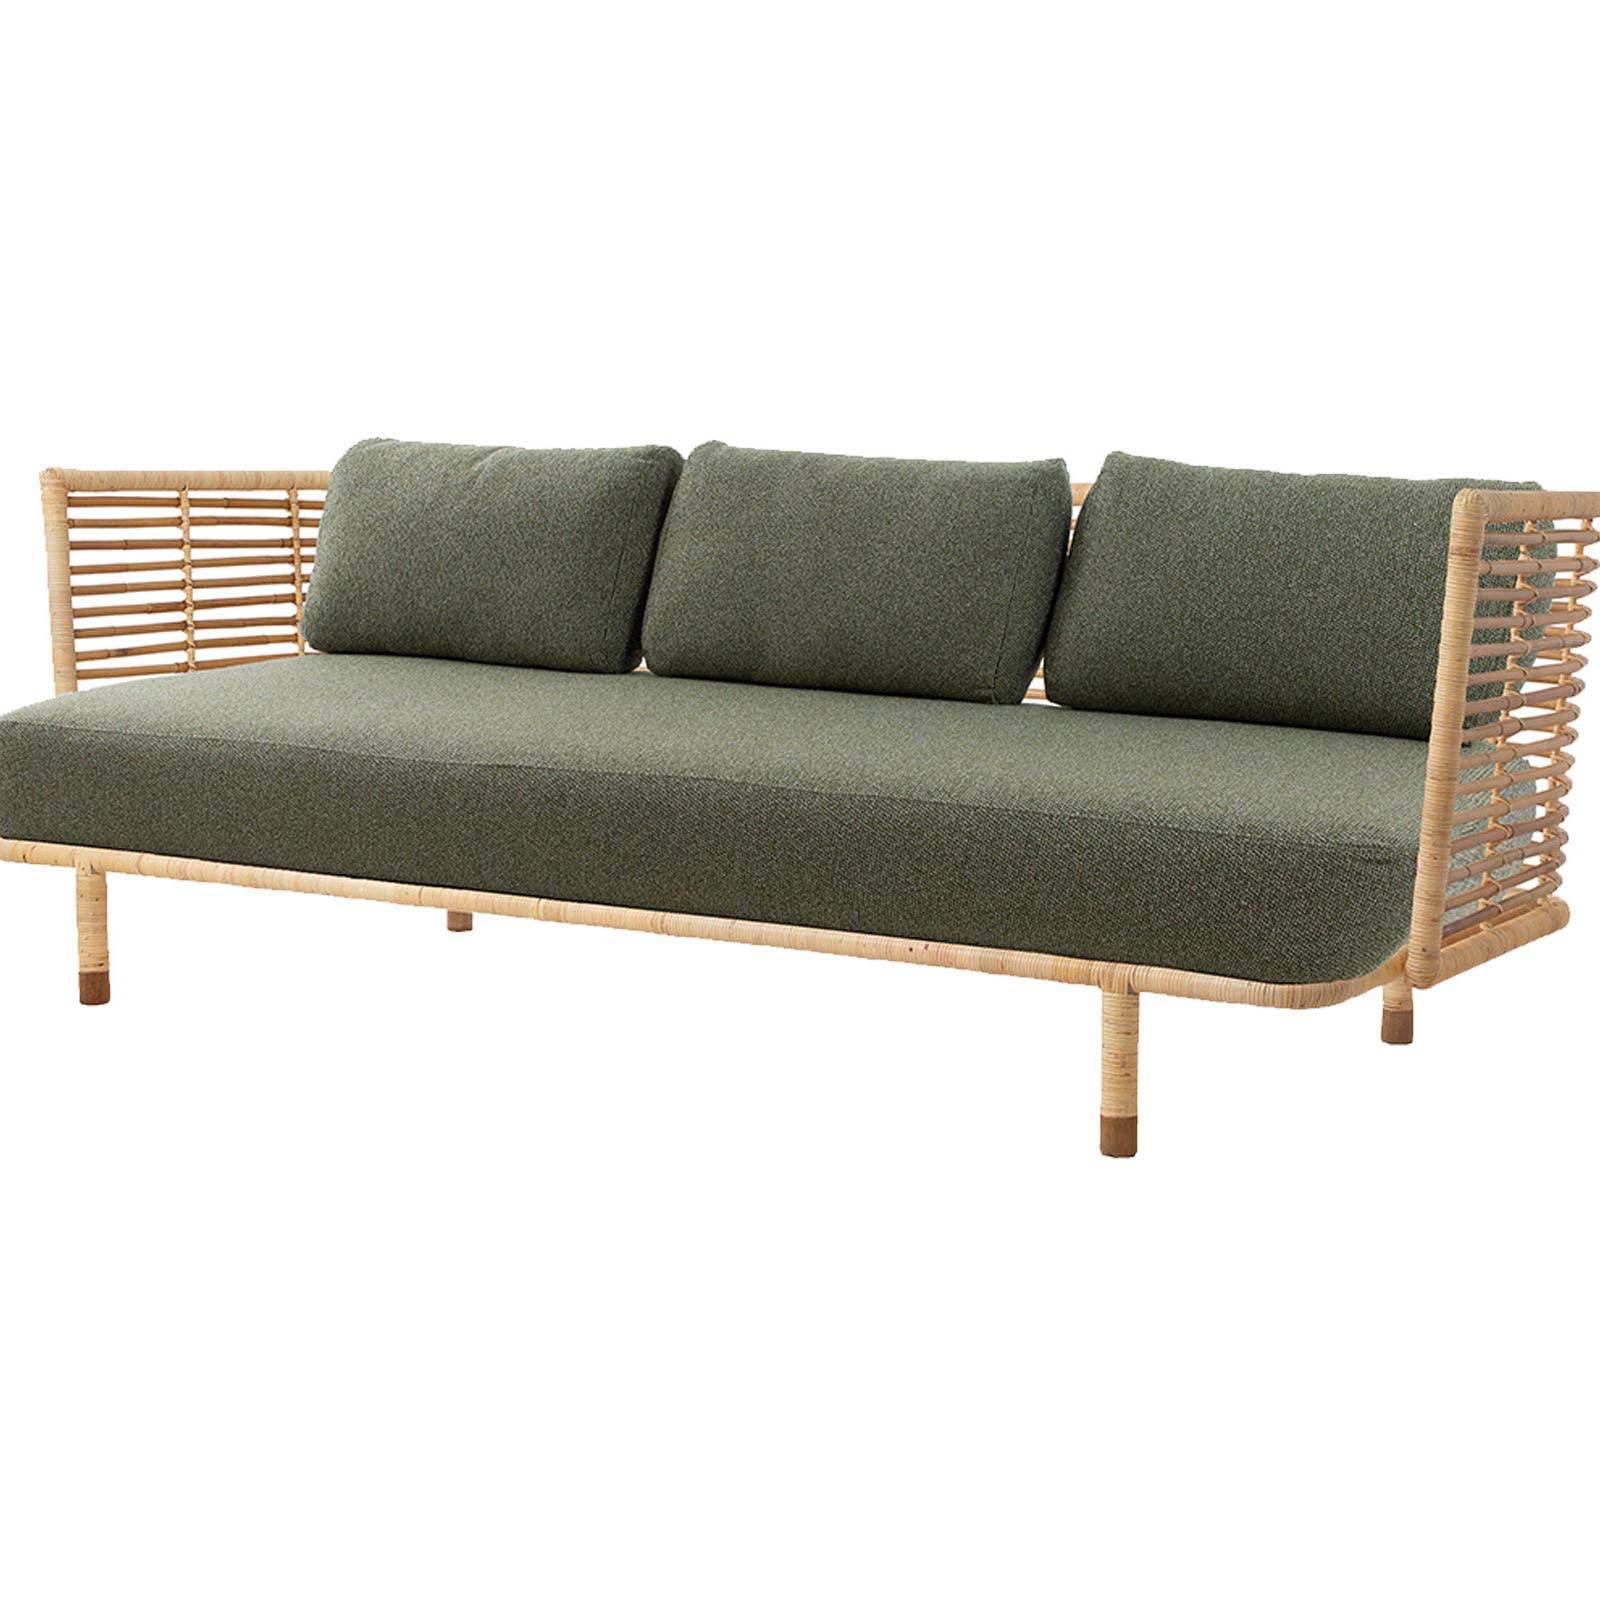 Sense 3-Sitzer Sofa aus Rattan in Natural mit Kissen aus Cane-line Wove in Dark Green